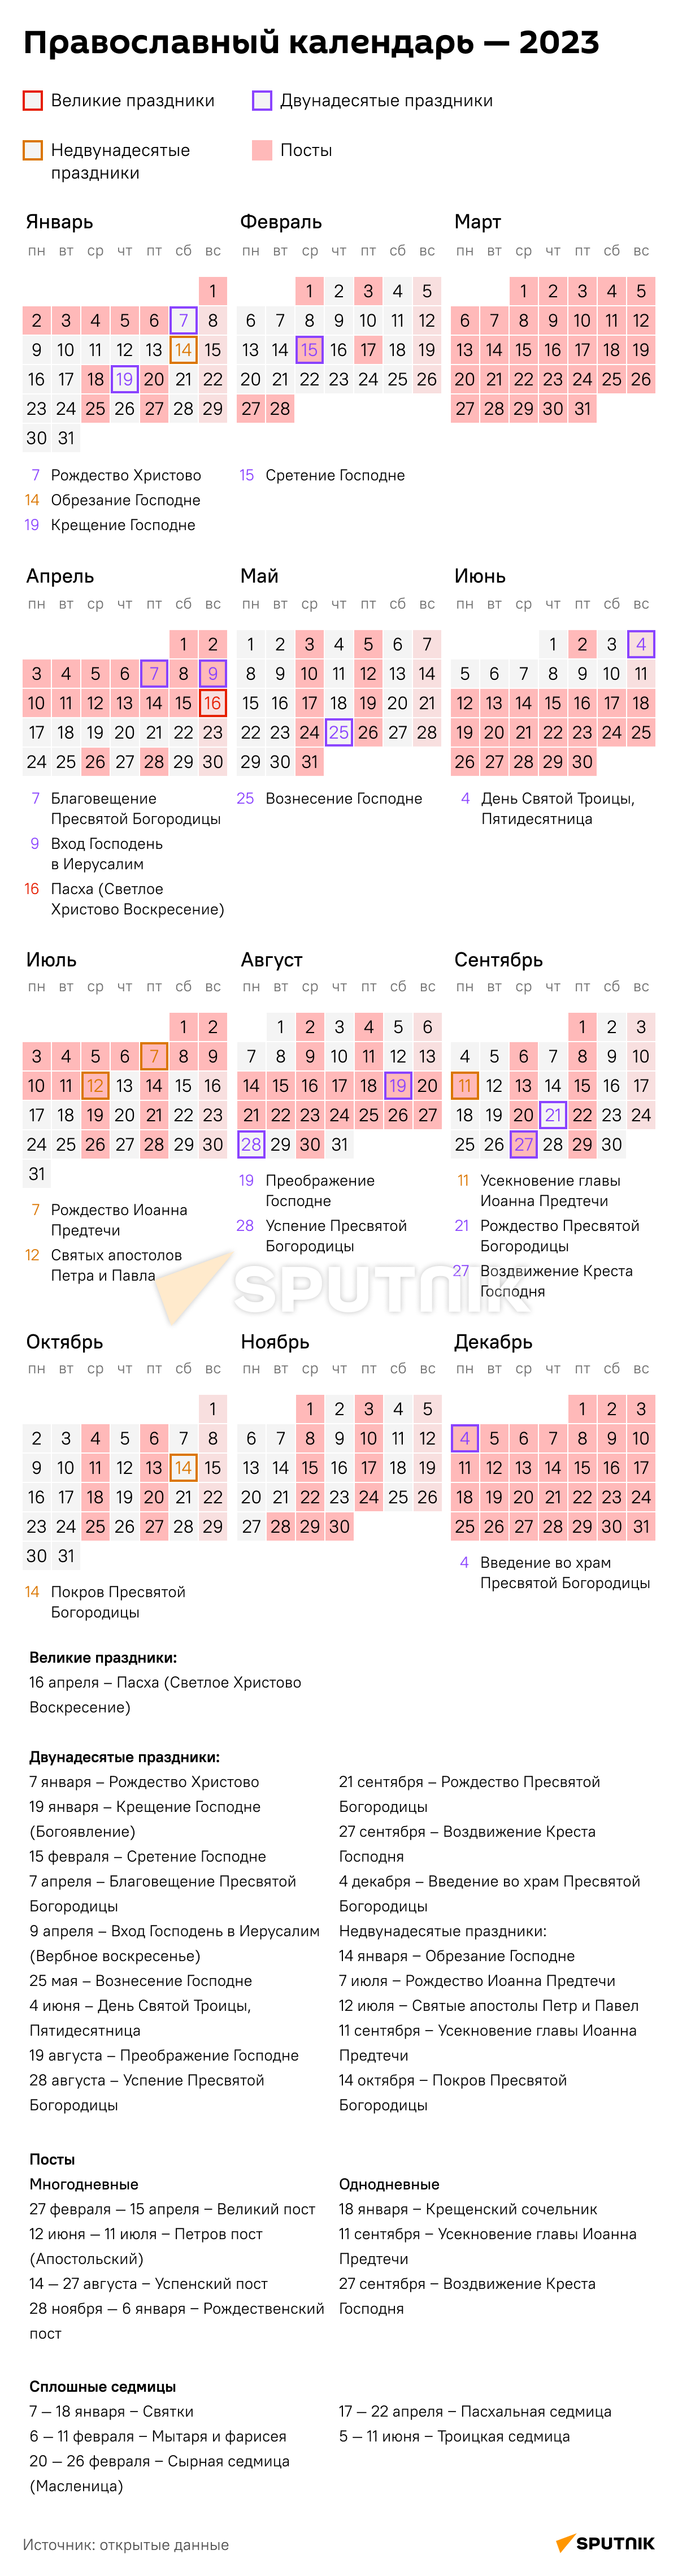 православный календарь на 2023 год с праздниками и постами каждый